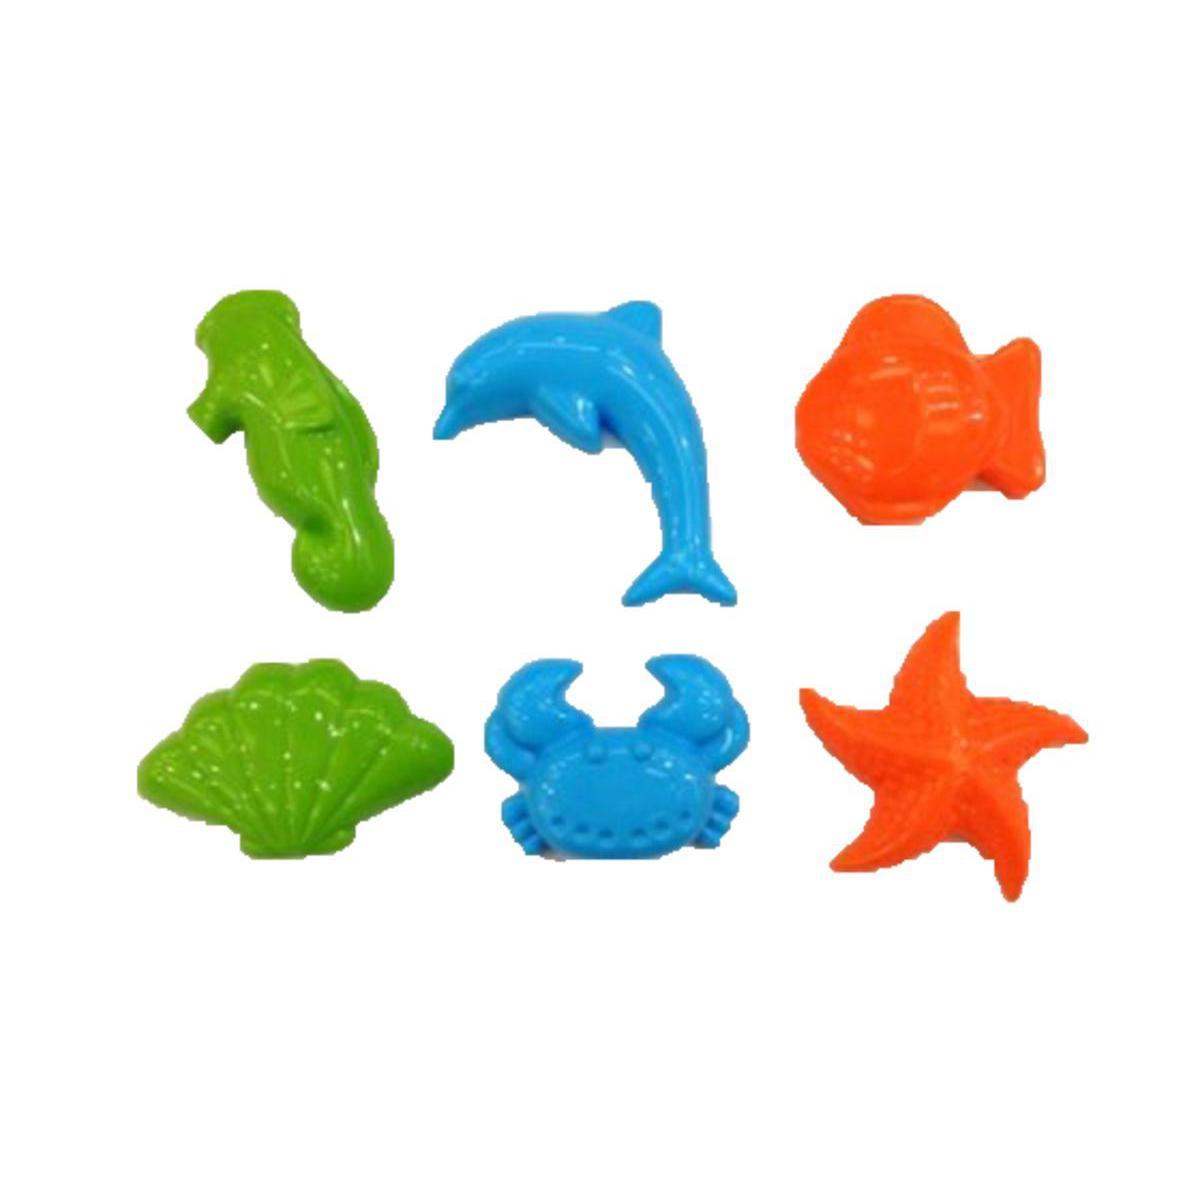 Moules pour sable lunaire - Plastique - 9 x 5 x 12,5 cm - Bleu, vert et orange